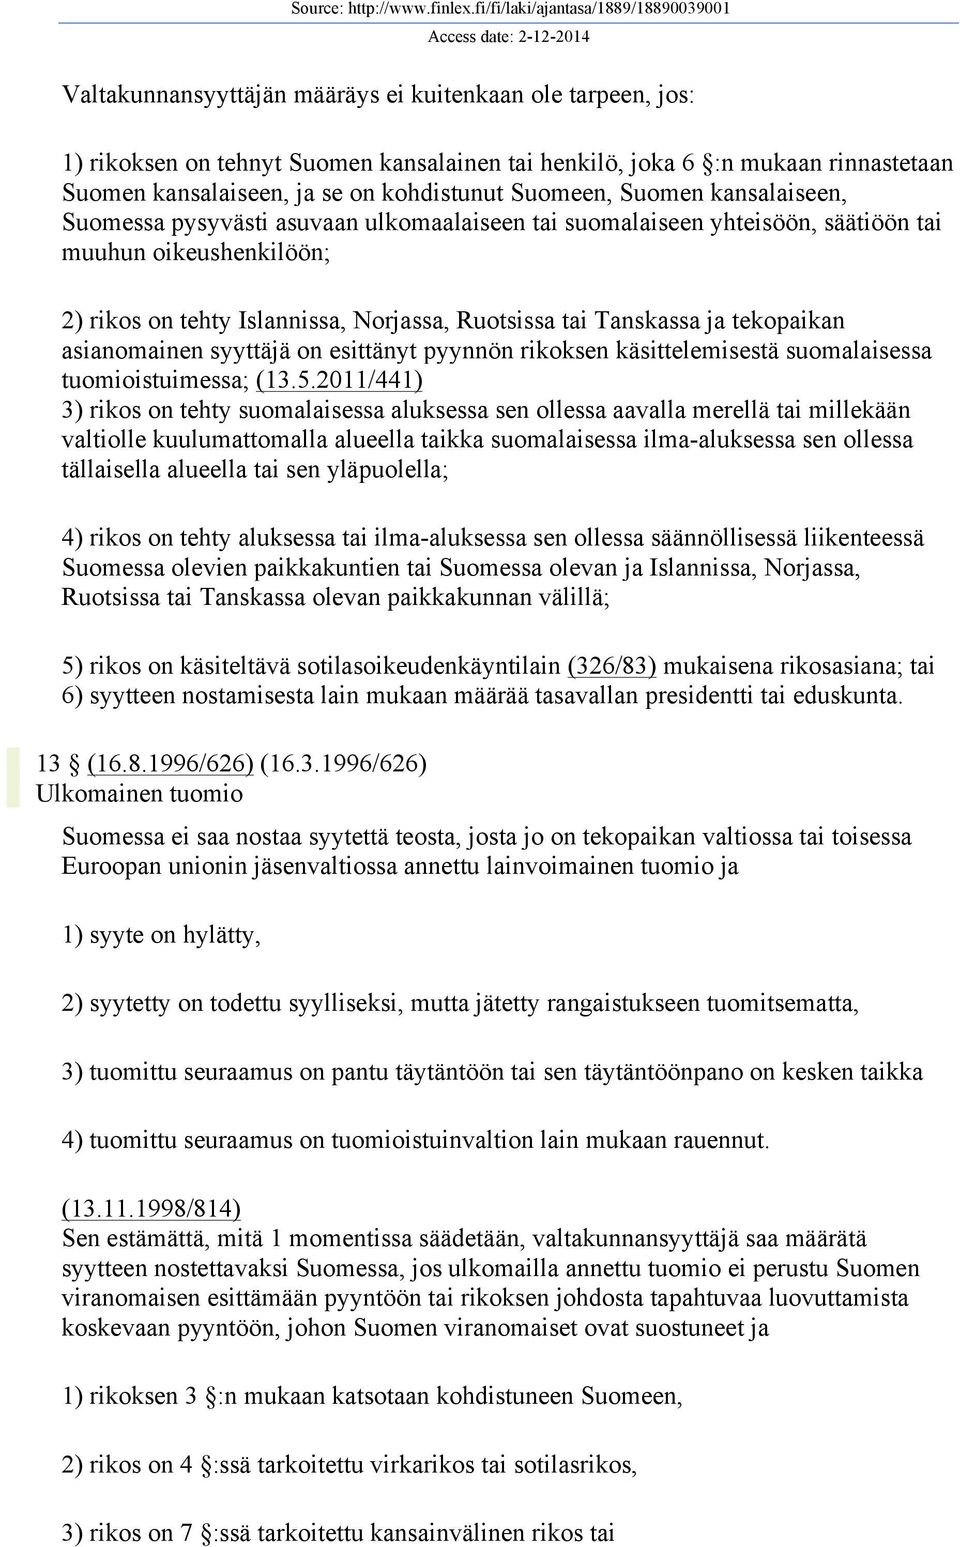 tekopaikan asianomainen syyttäjä on esittänyt pyynnön rikoksen käsittelemisestä suomalaisessa tuomioistuimessa; (13.5.